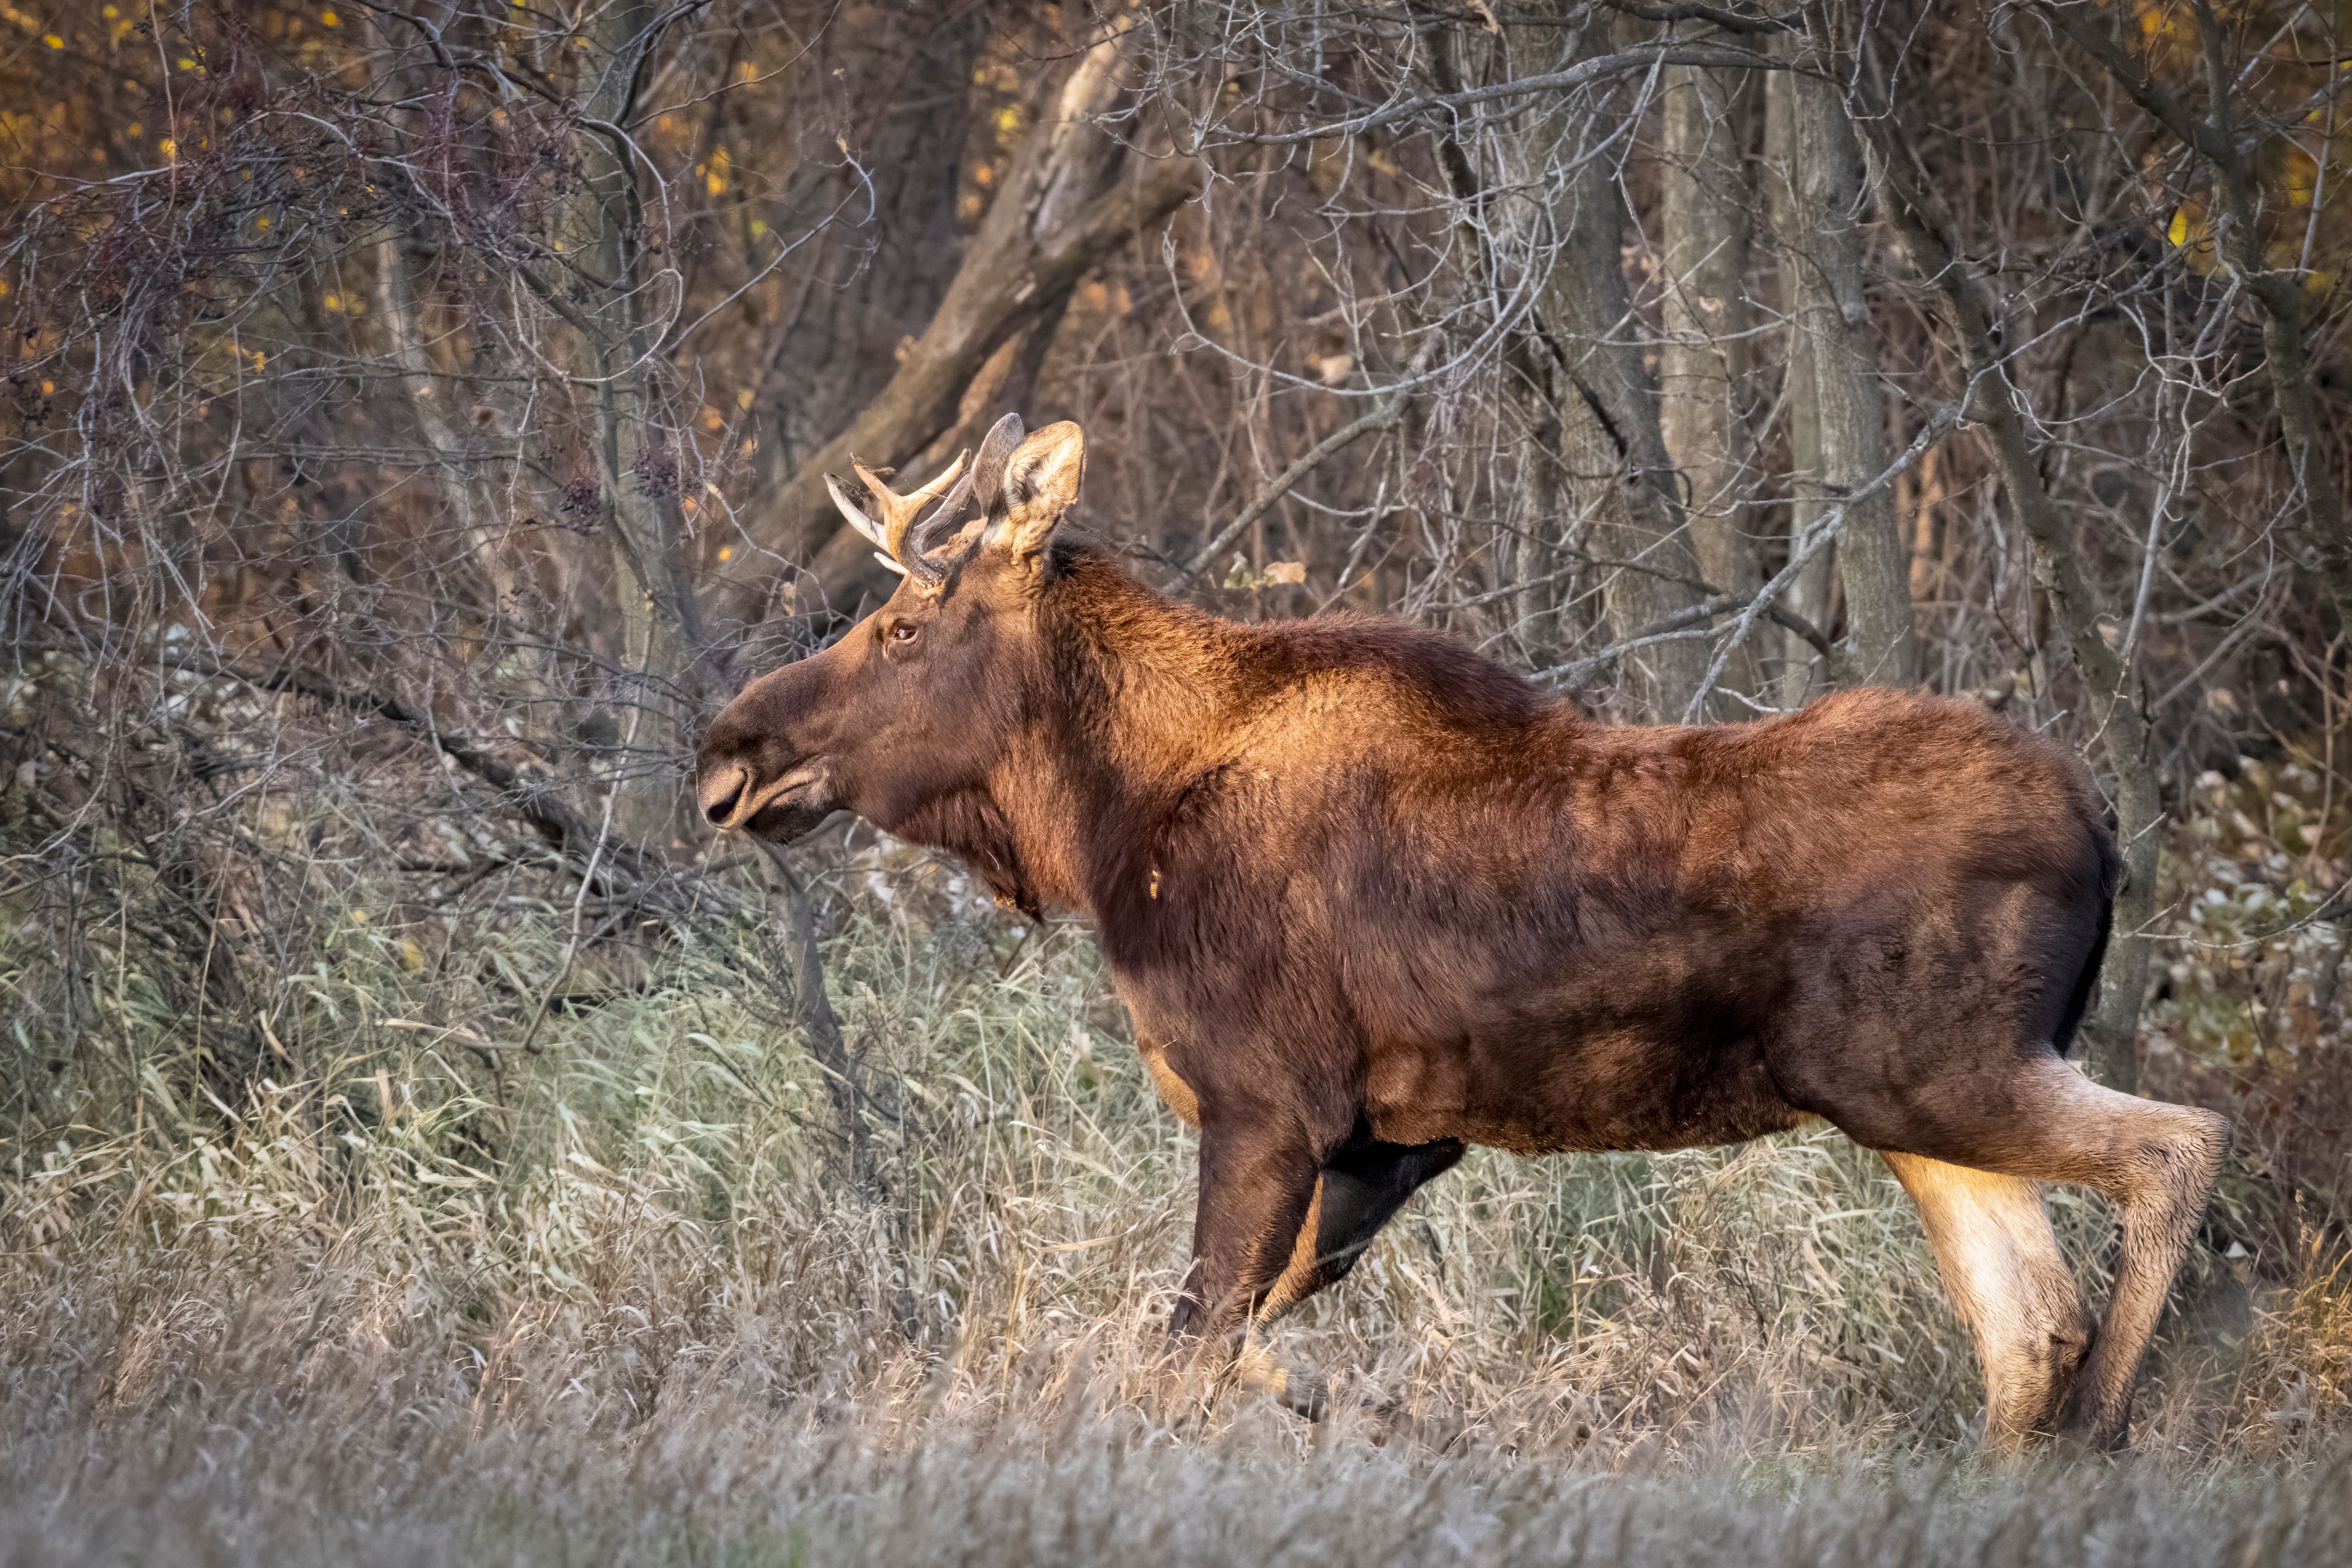 Rutt, the viral moose